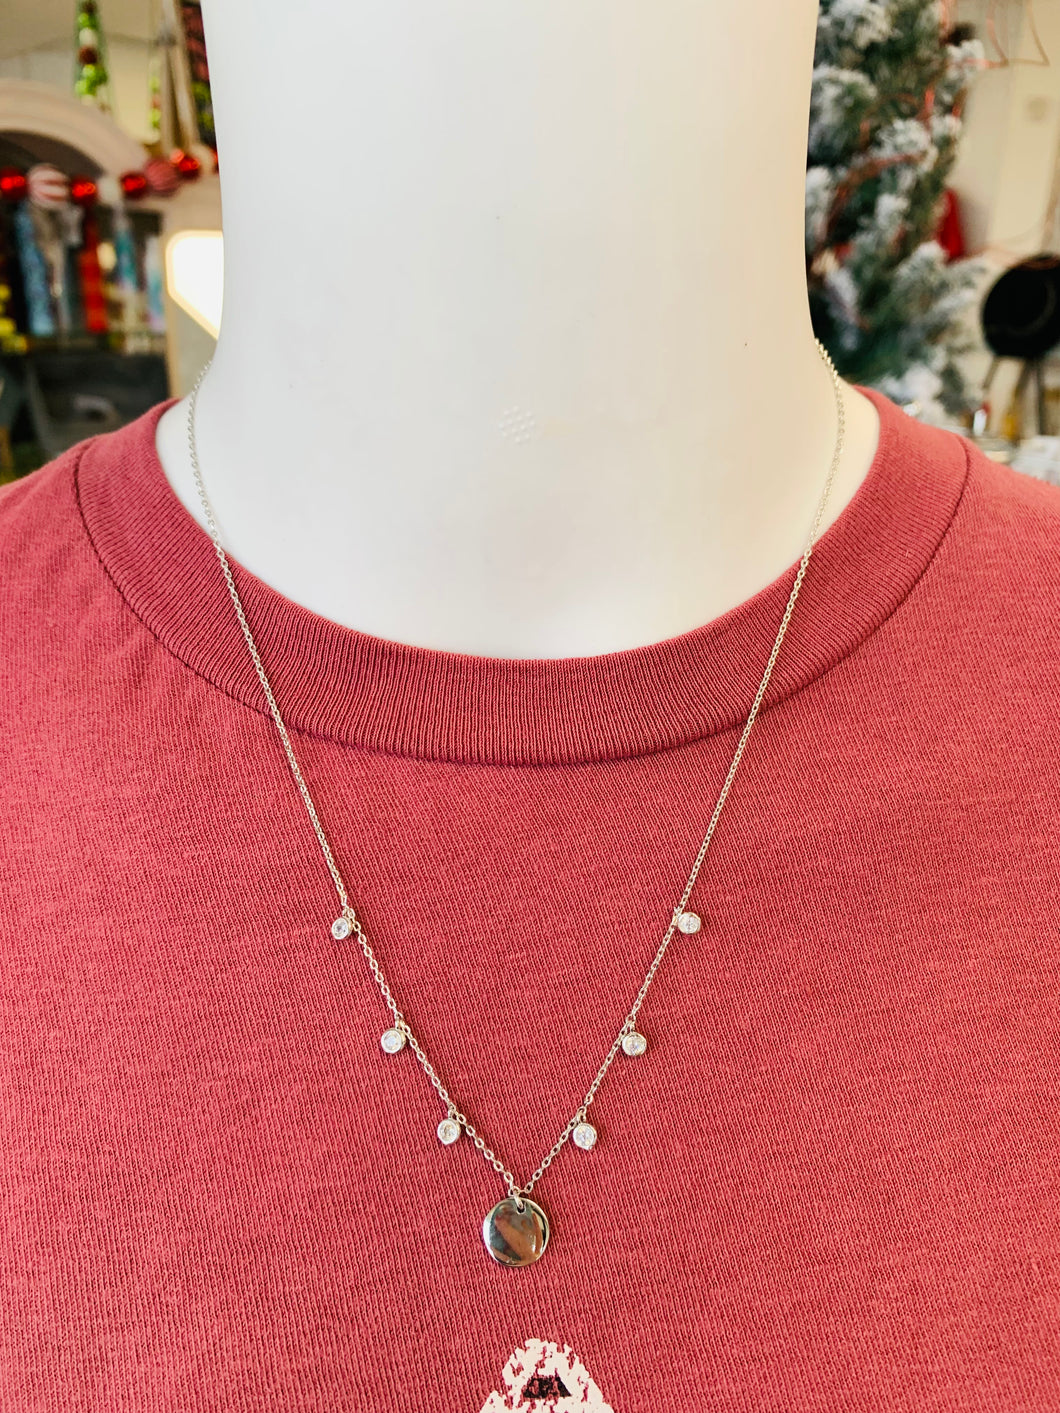 Six Stone Silver Necklace - Southern Grace Shoppe